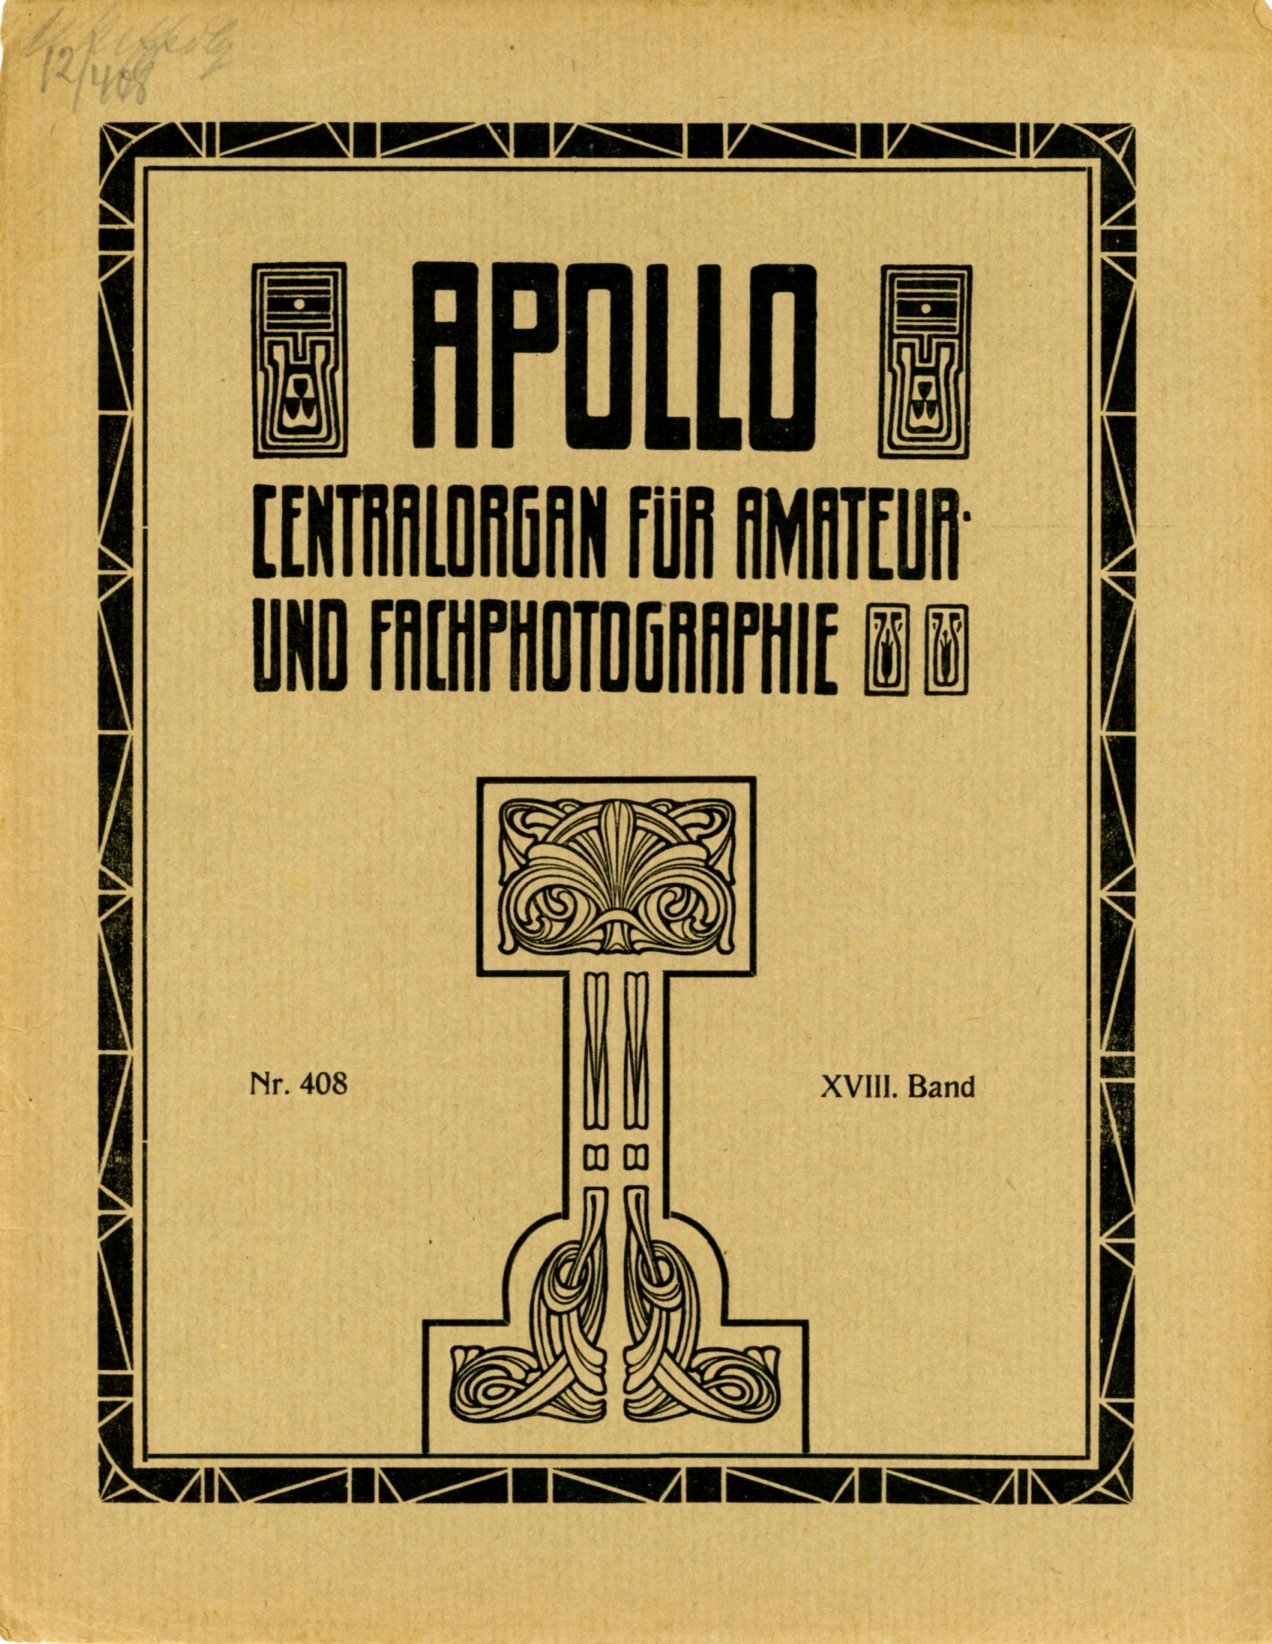 Журнал Apollo №408, 22 juni 1912 (Музей фотографії Київського національного університету технології та дизайну CC BY-NC-SA)